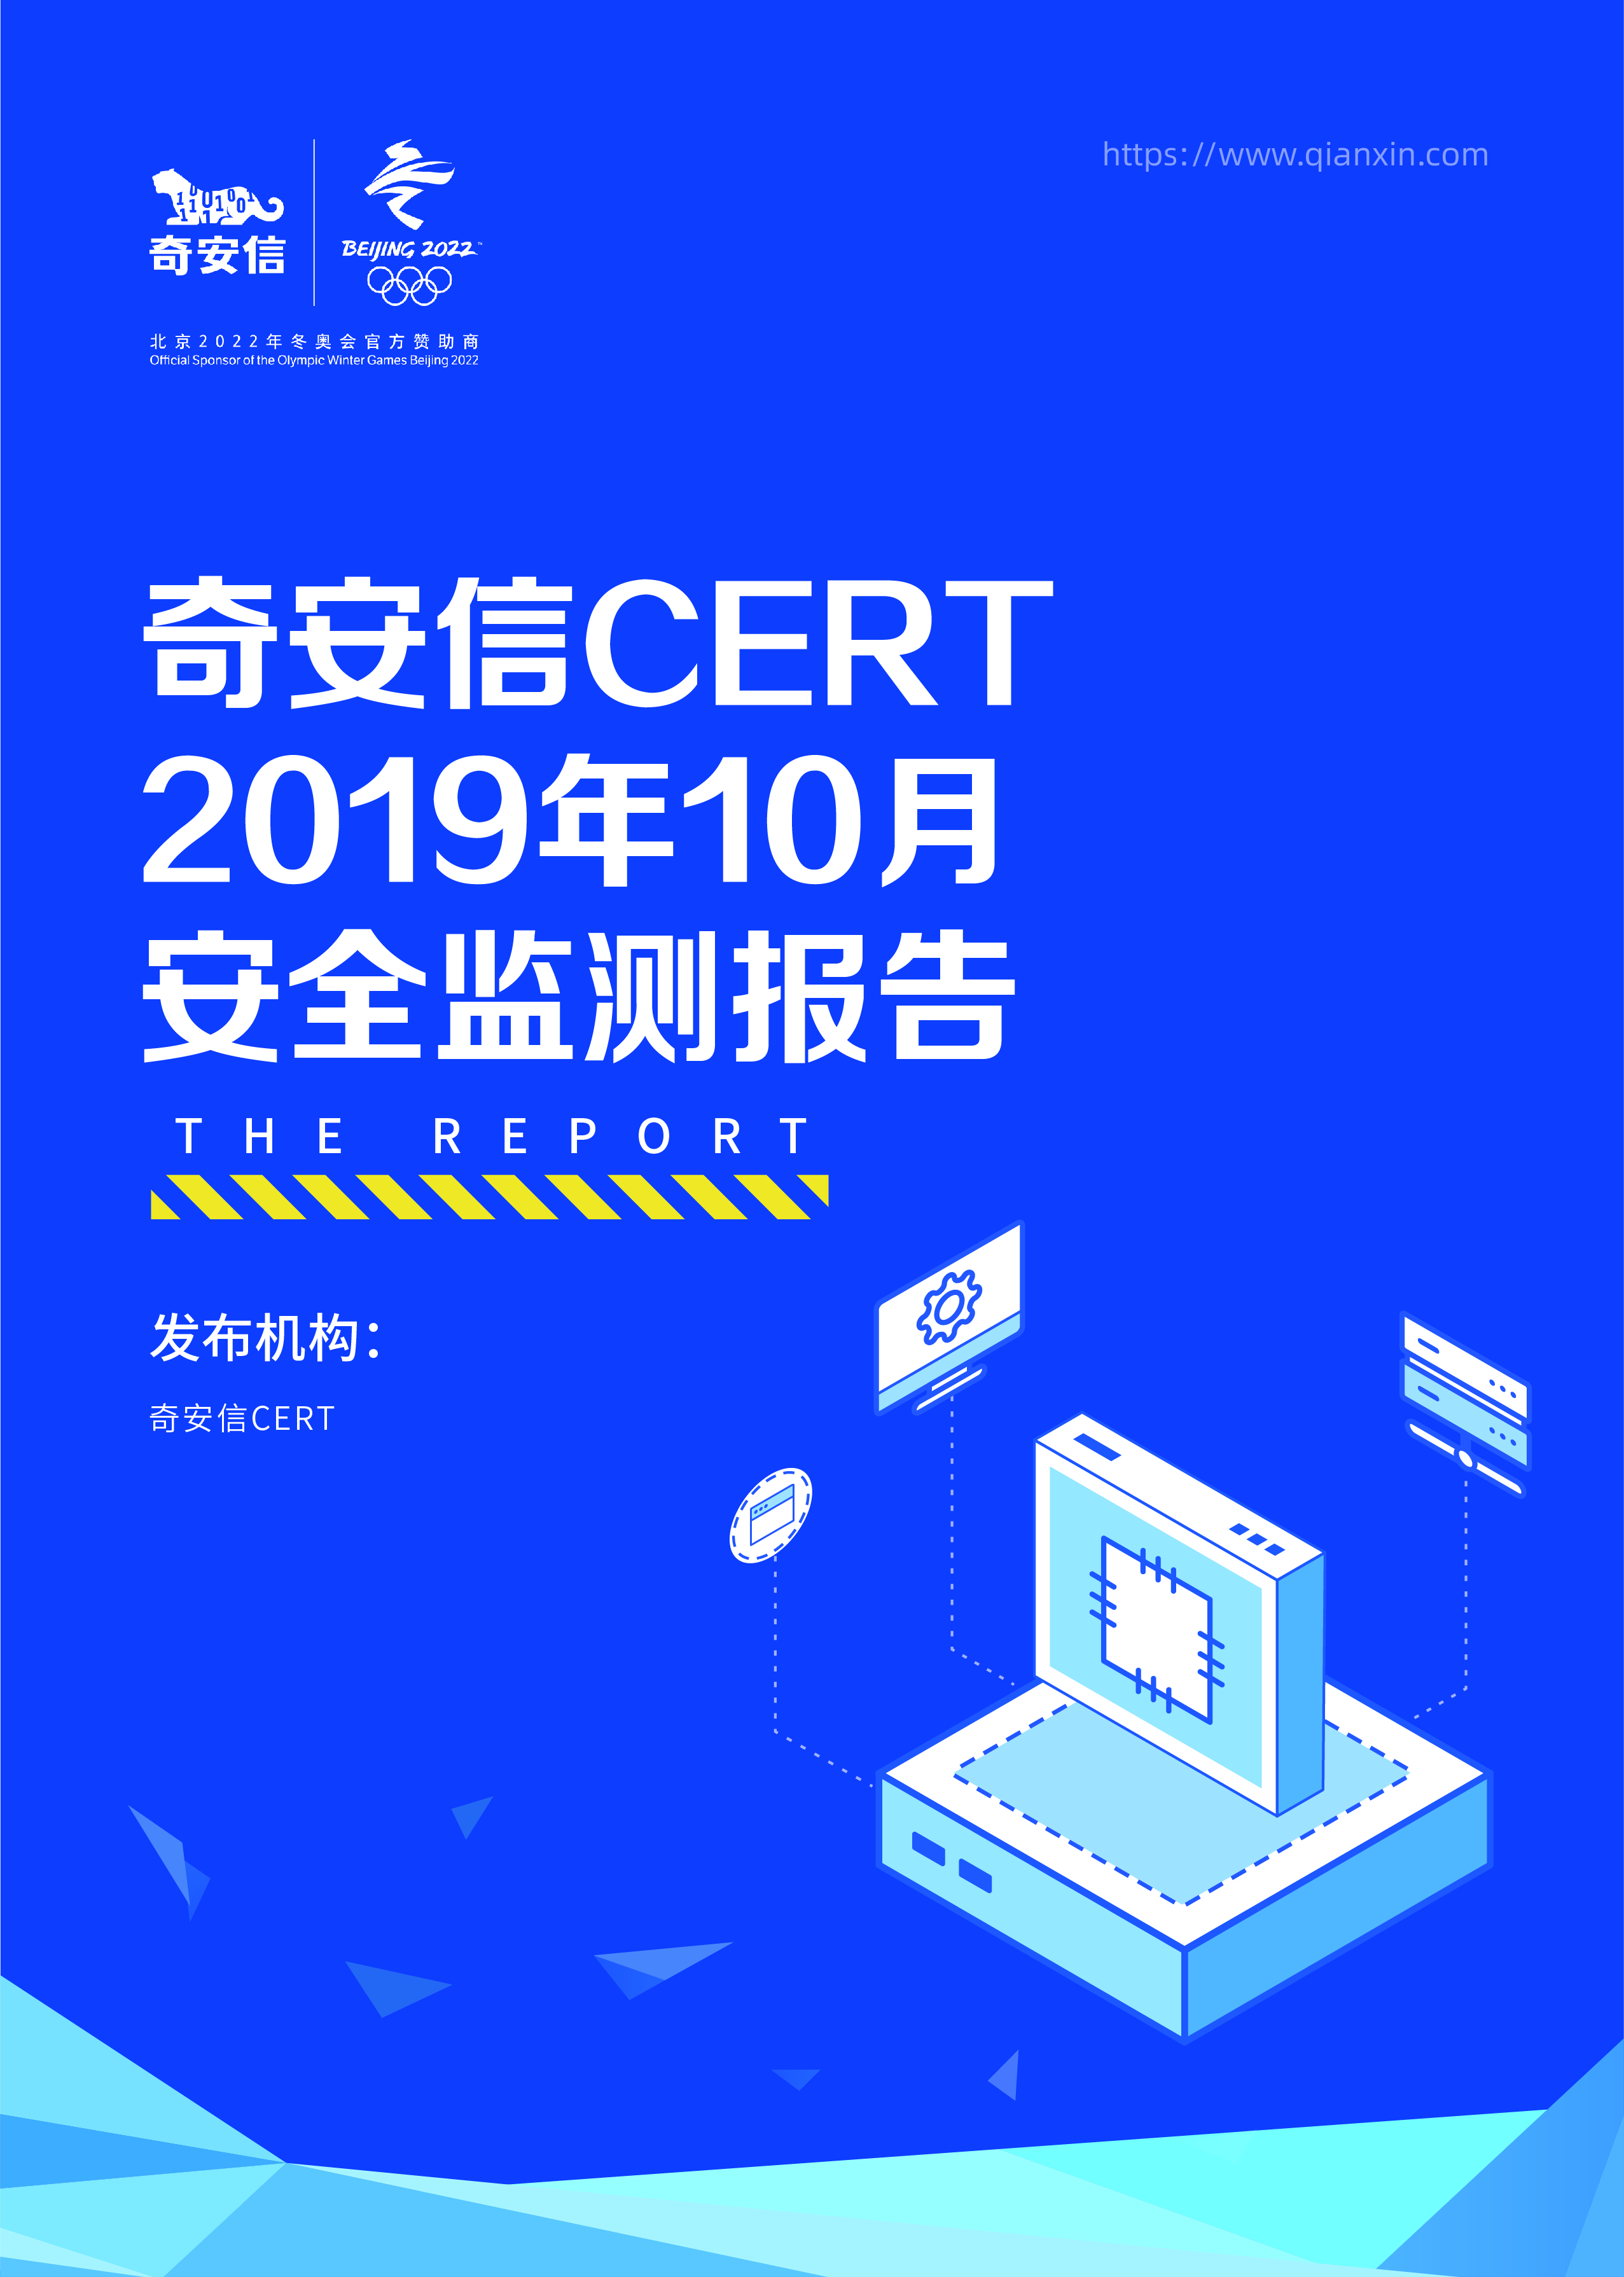 奇安信 CERT 2019年10月安全监测报告